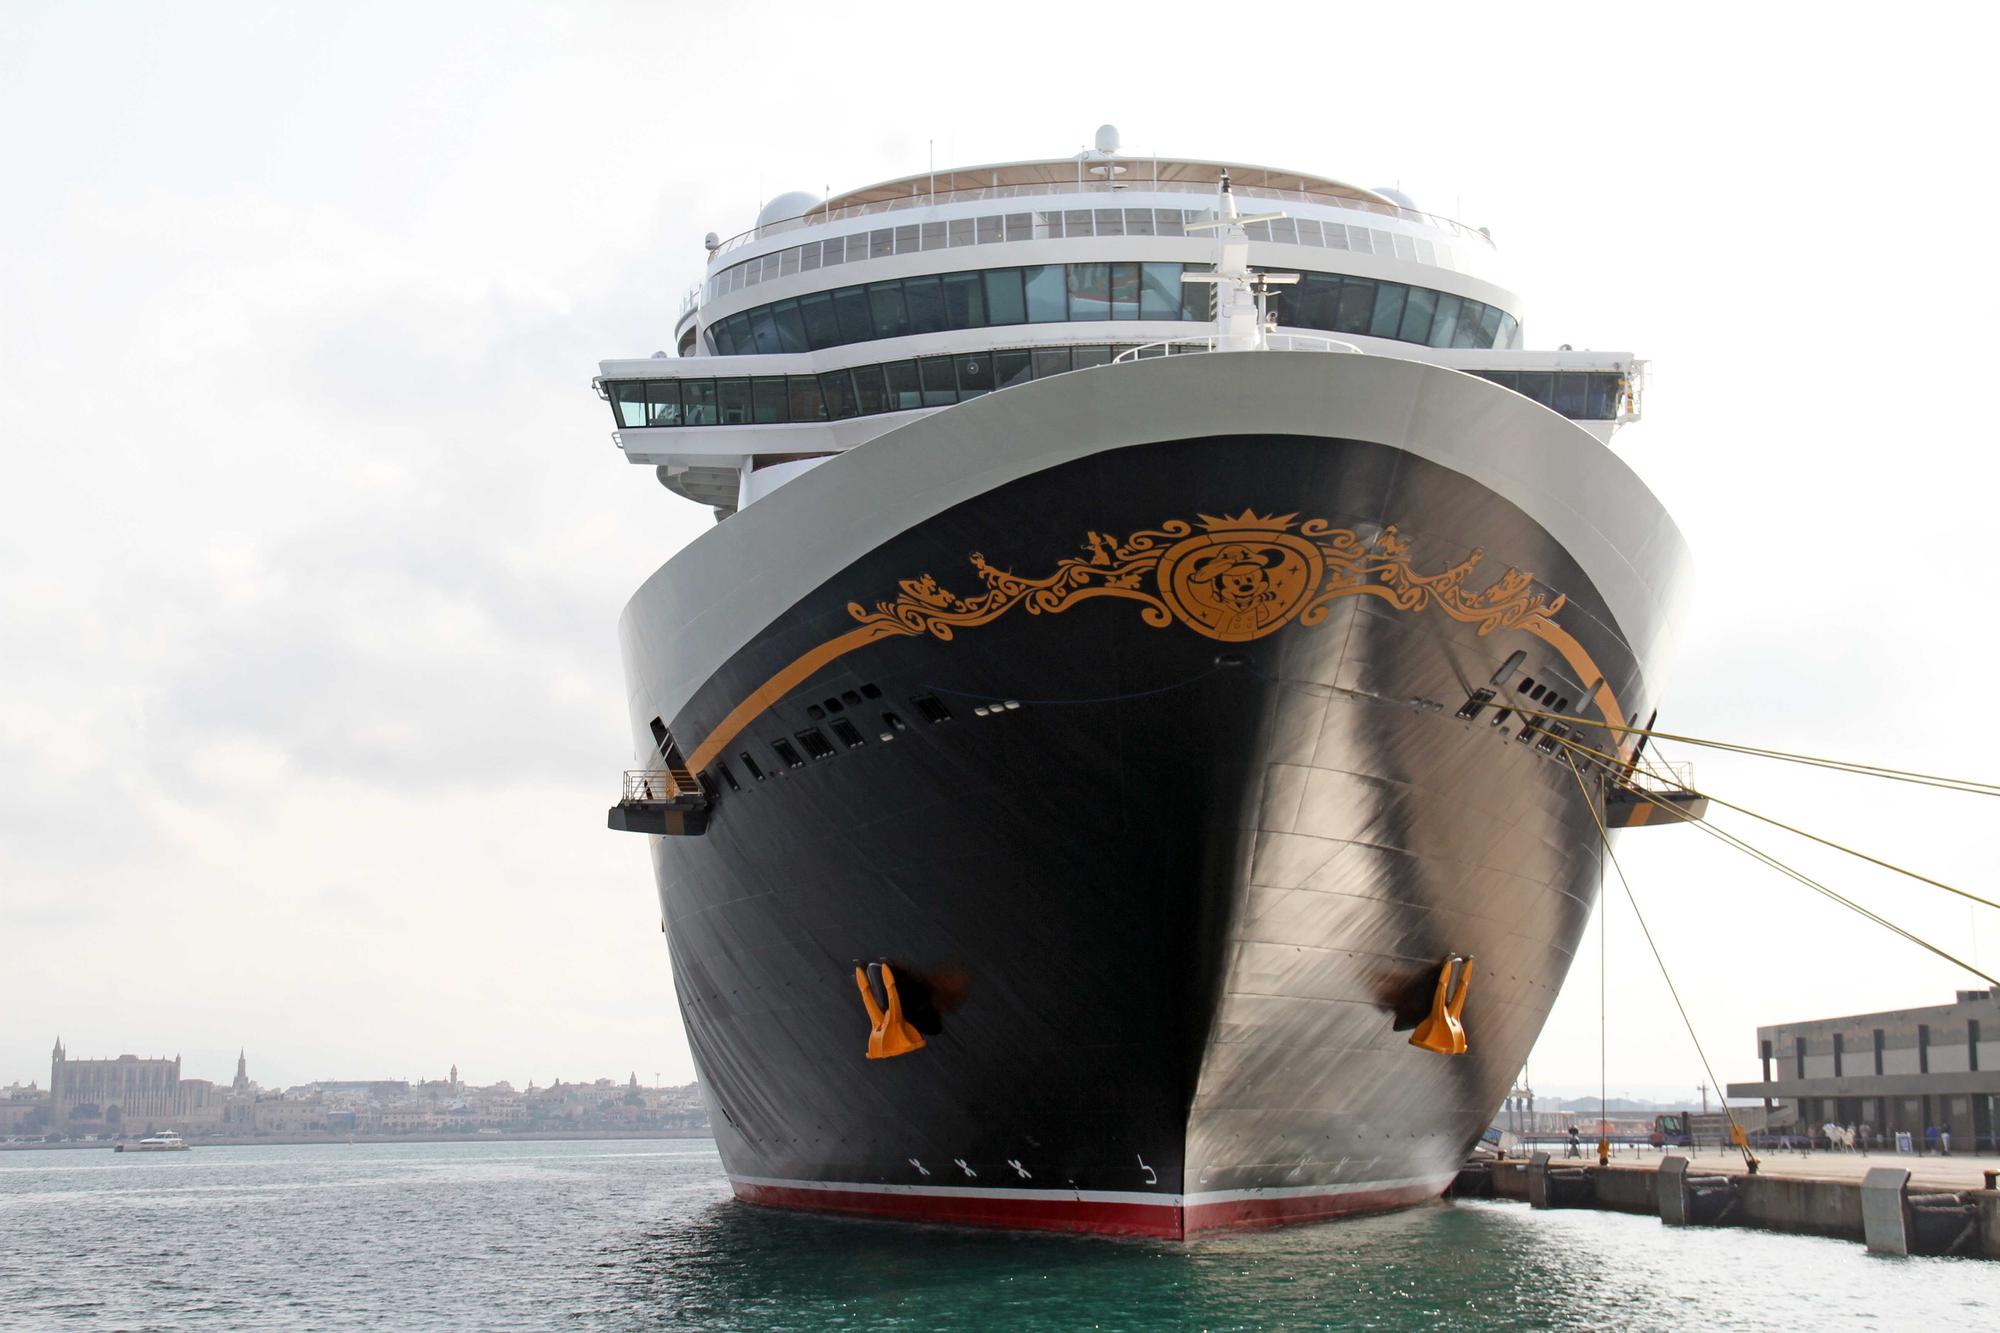 'Disney Dream': un crucero de Disney llega a Palma